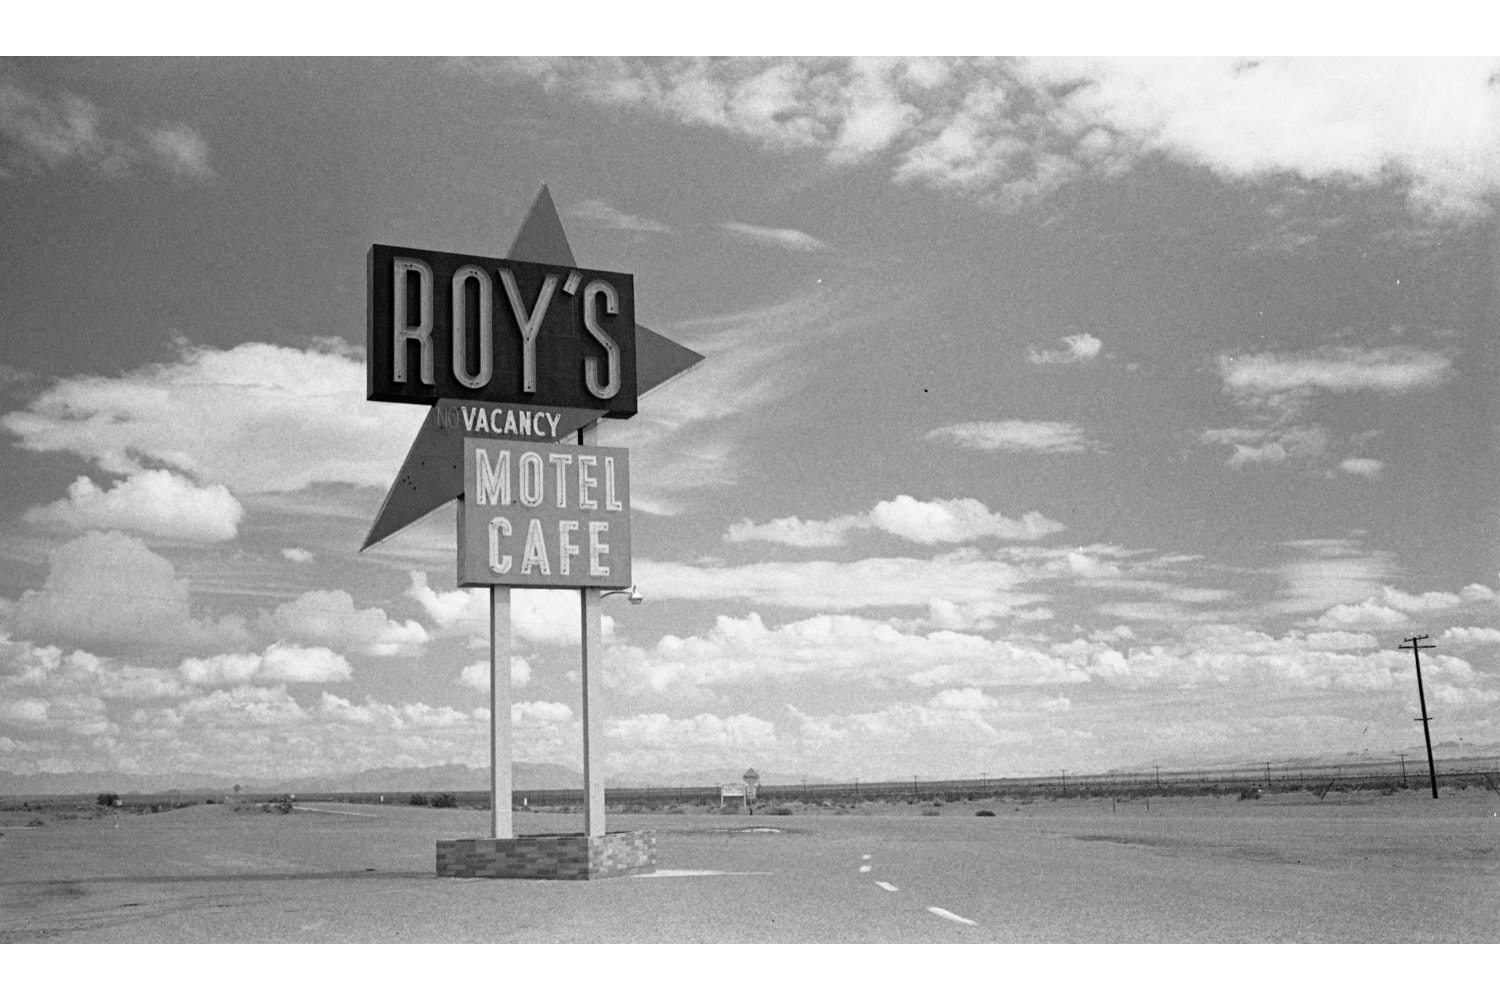 小林昭写真展 “Back On The Highway” で感じる40年前のアメリカ